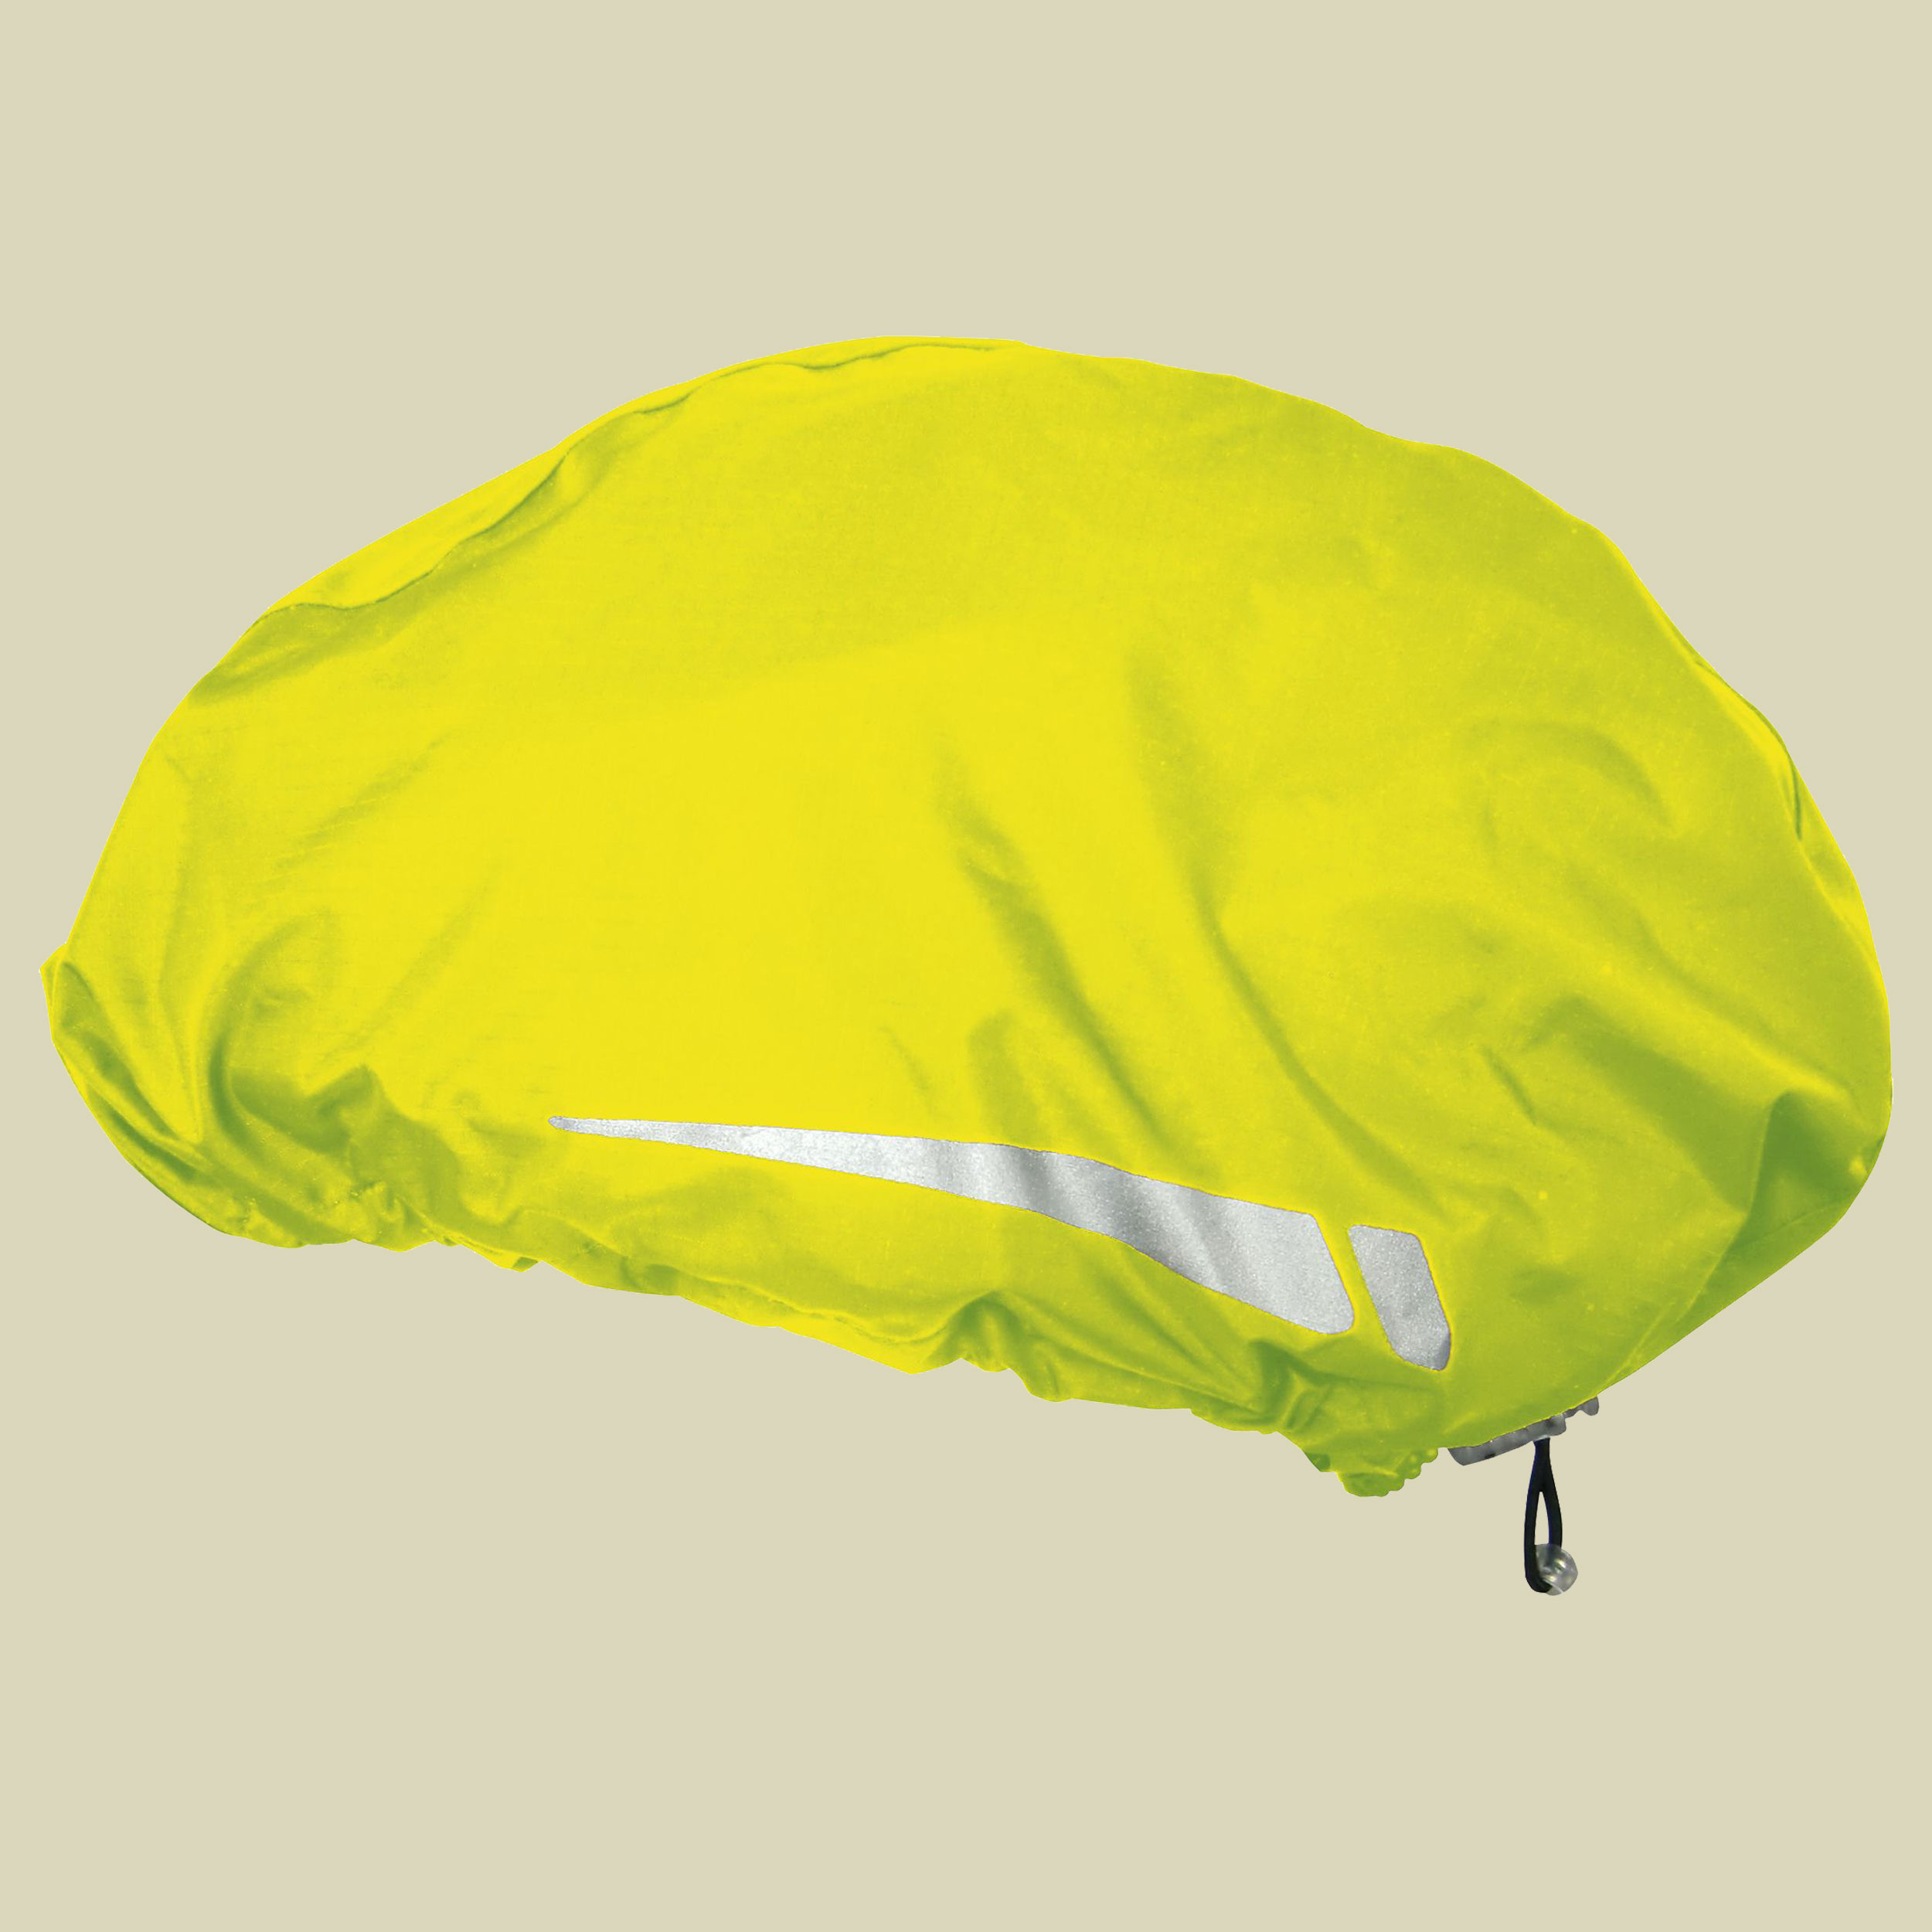 Helmcover Pro Größe XL Farbe neon gelb